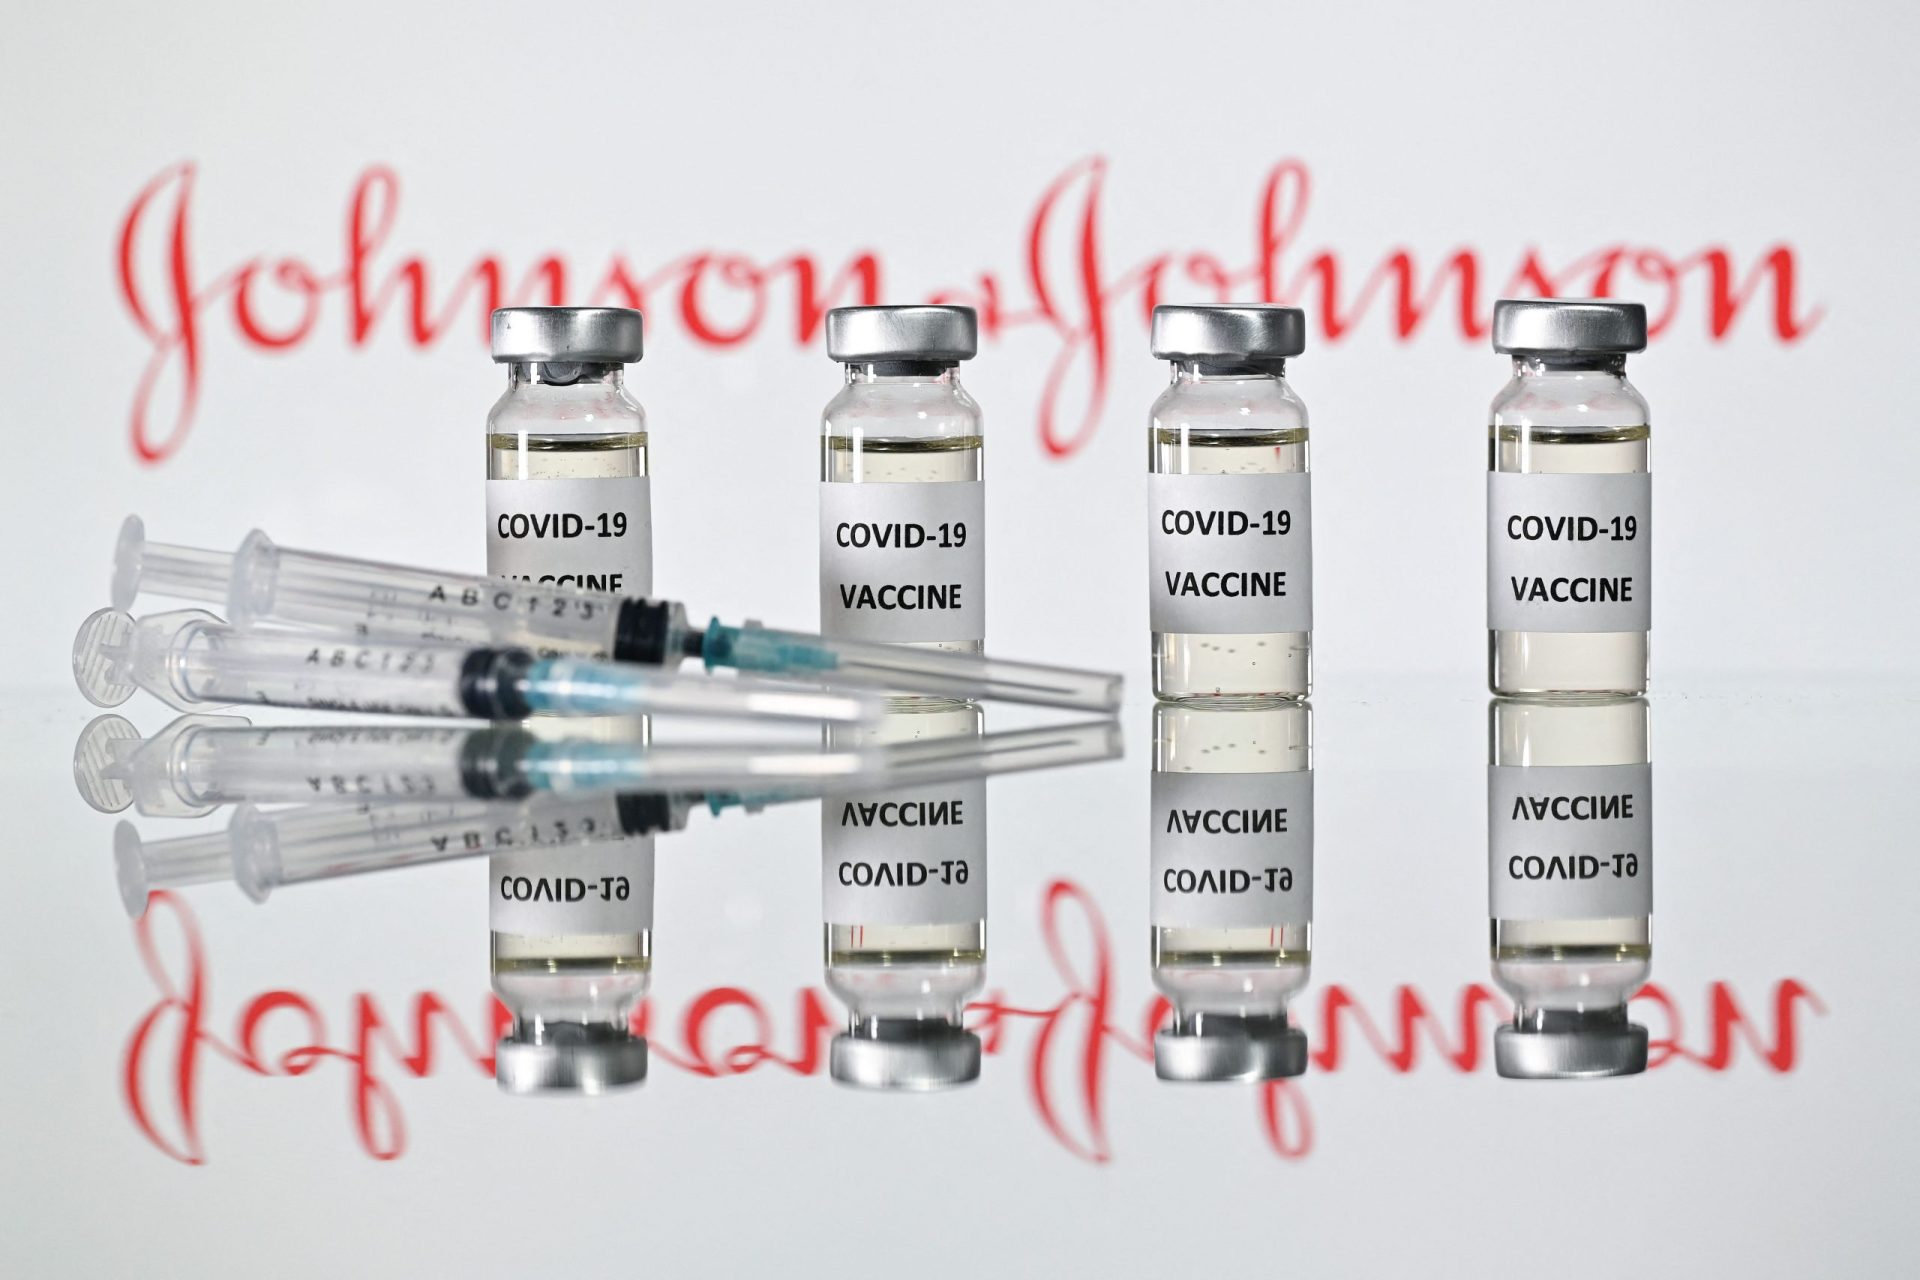 Vacina da Johnson & Johnson de dose única contra a covid-19 considerada eficaz nos EUA